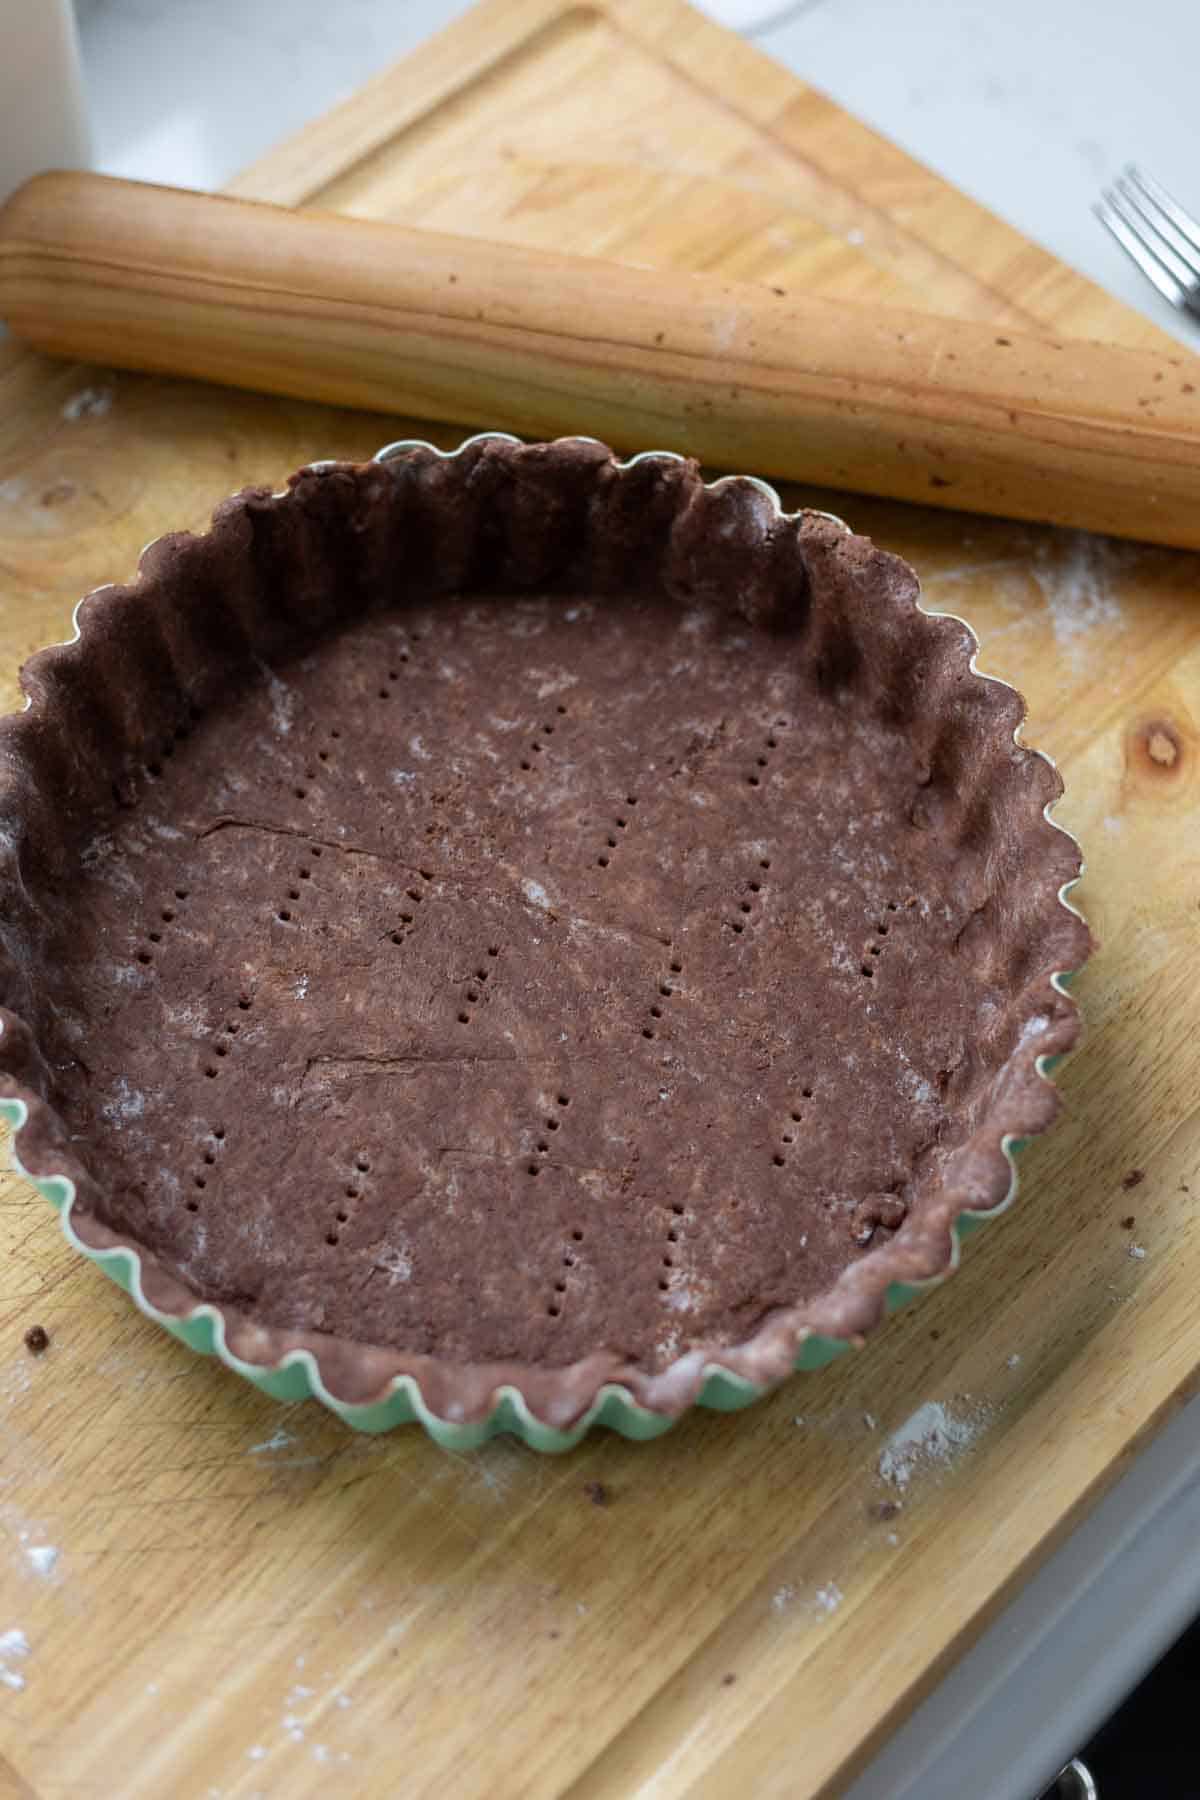 Chocolate tart crust in a tart pan on a cutting board.